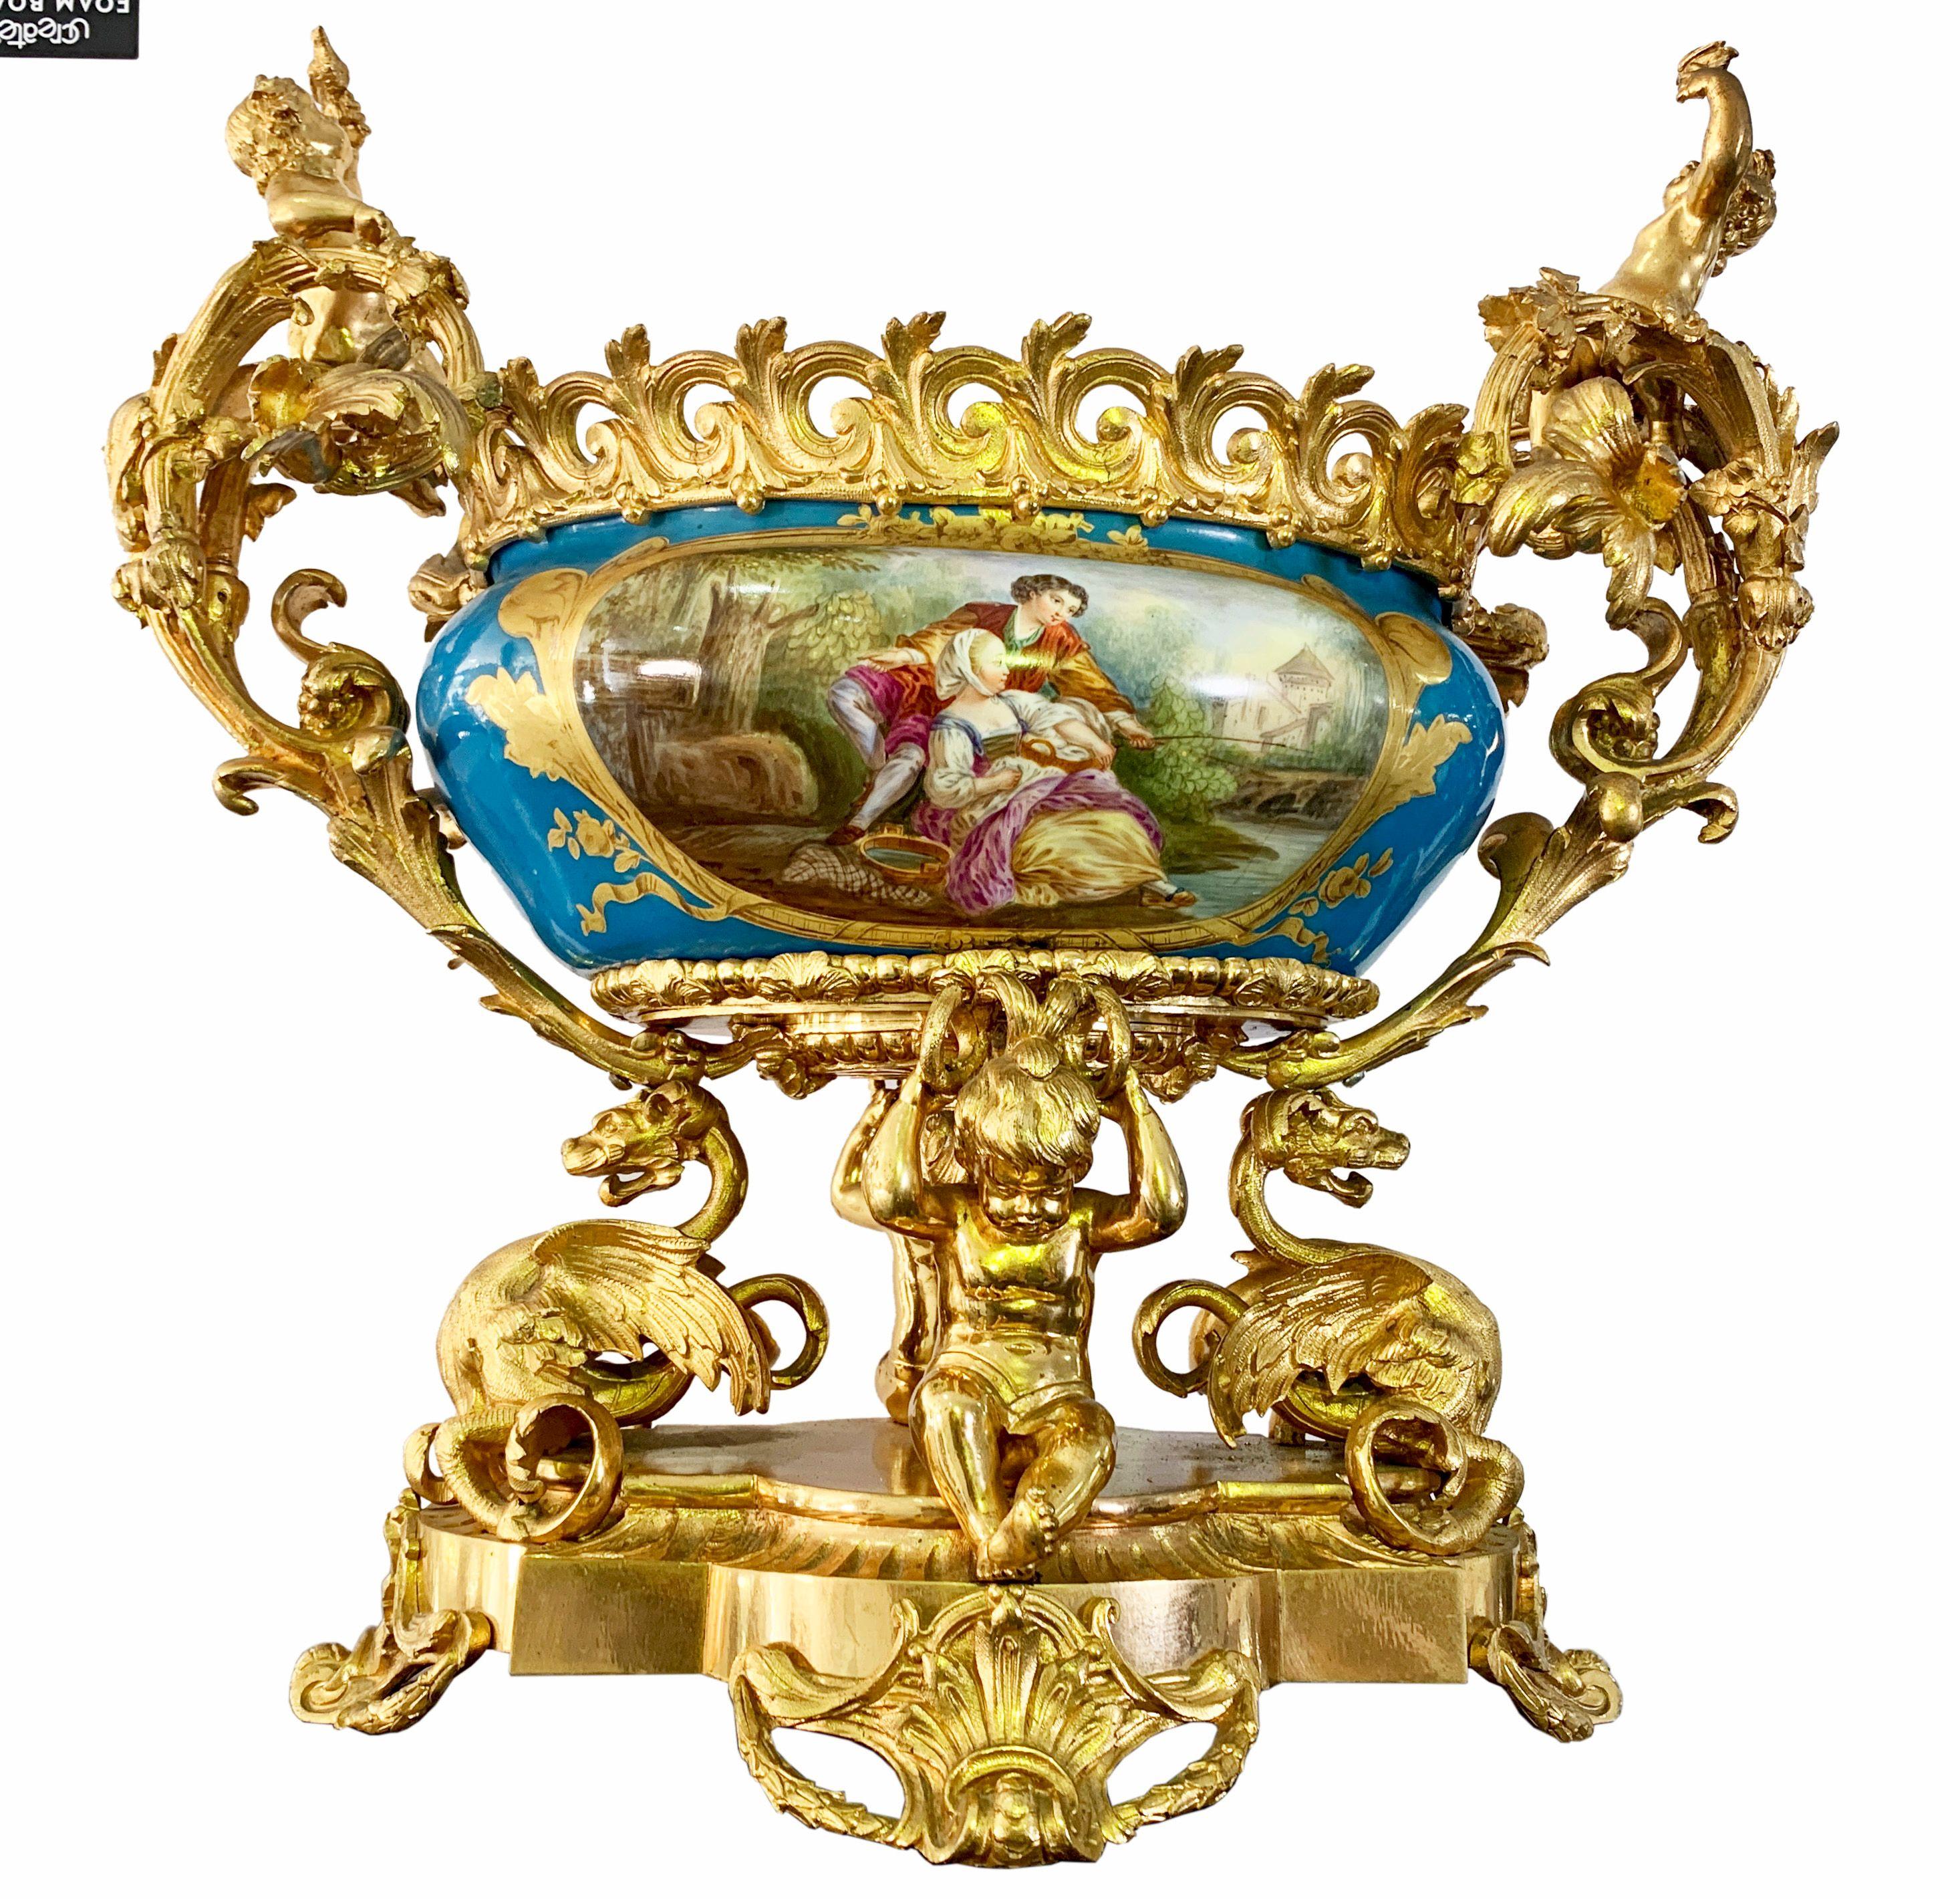 Une très belle et inhabituelle pièce centrale figurative de style Sèvres en porcelaine et bronze doré du 19ème siècle. Deux chérubins moulés tenant des oiseaux sur les poignées de la coupe en porcelaine magistralement peinte, soutenue par deux